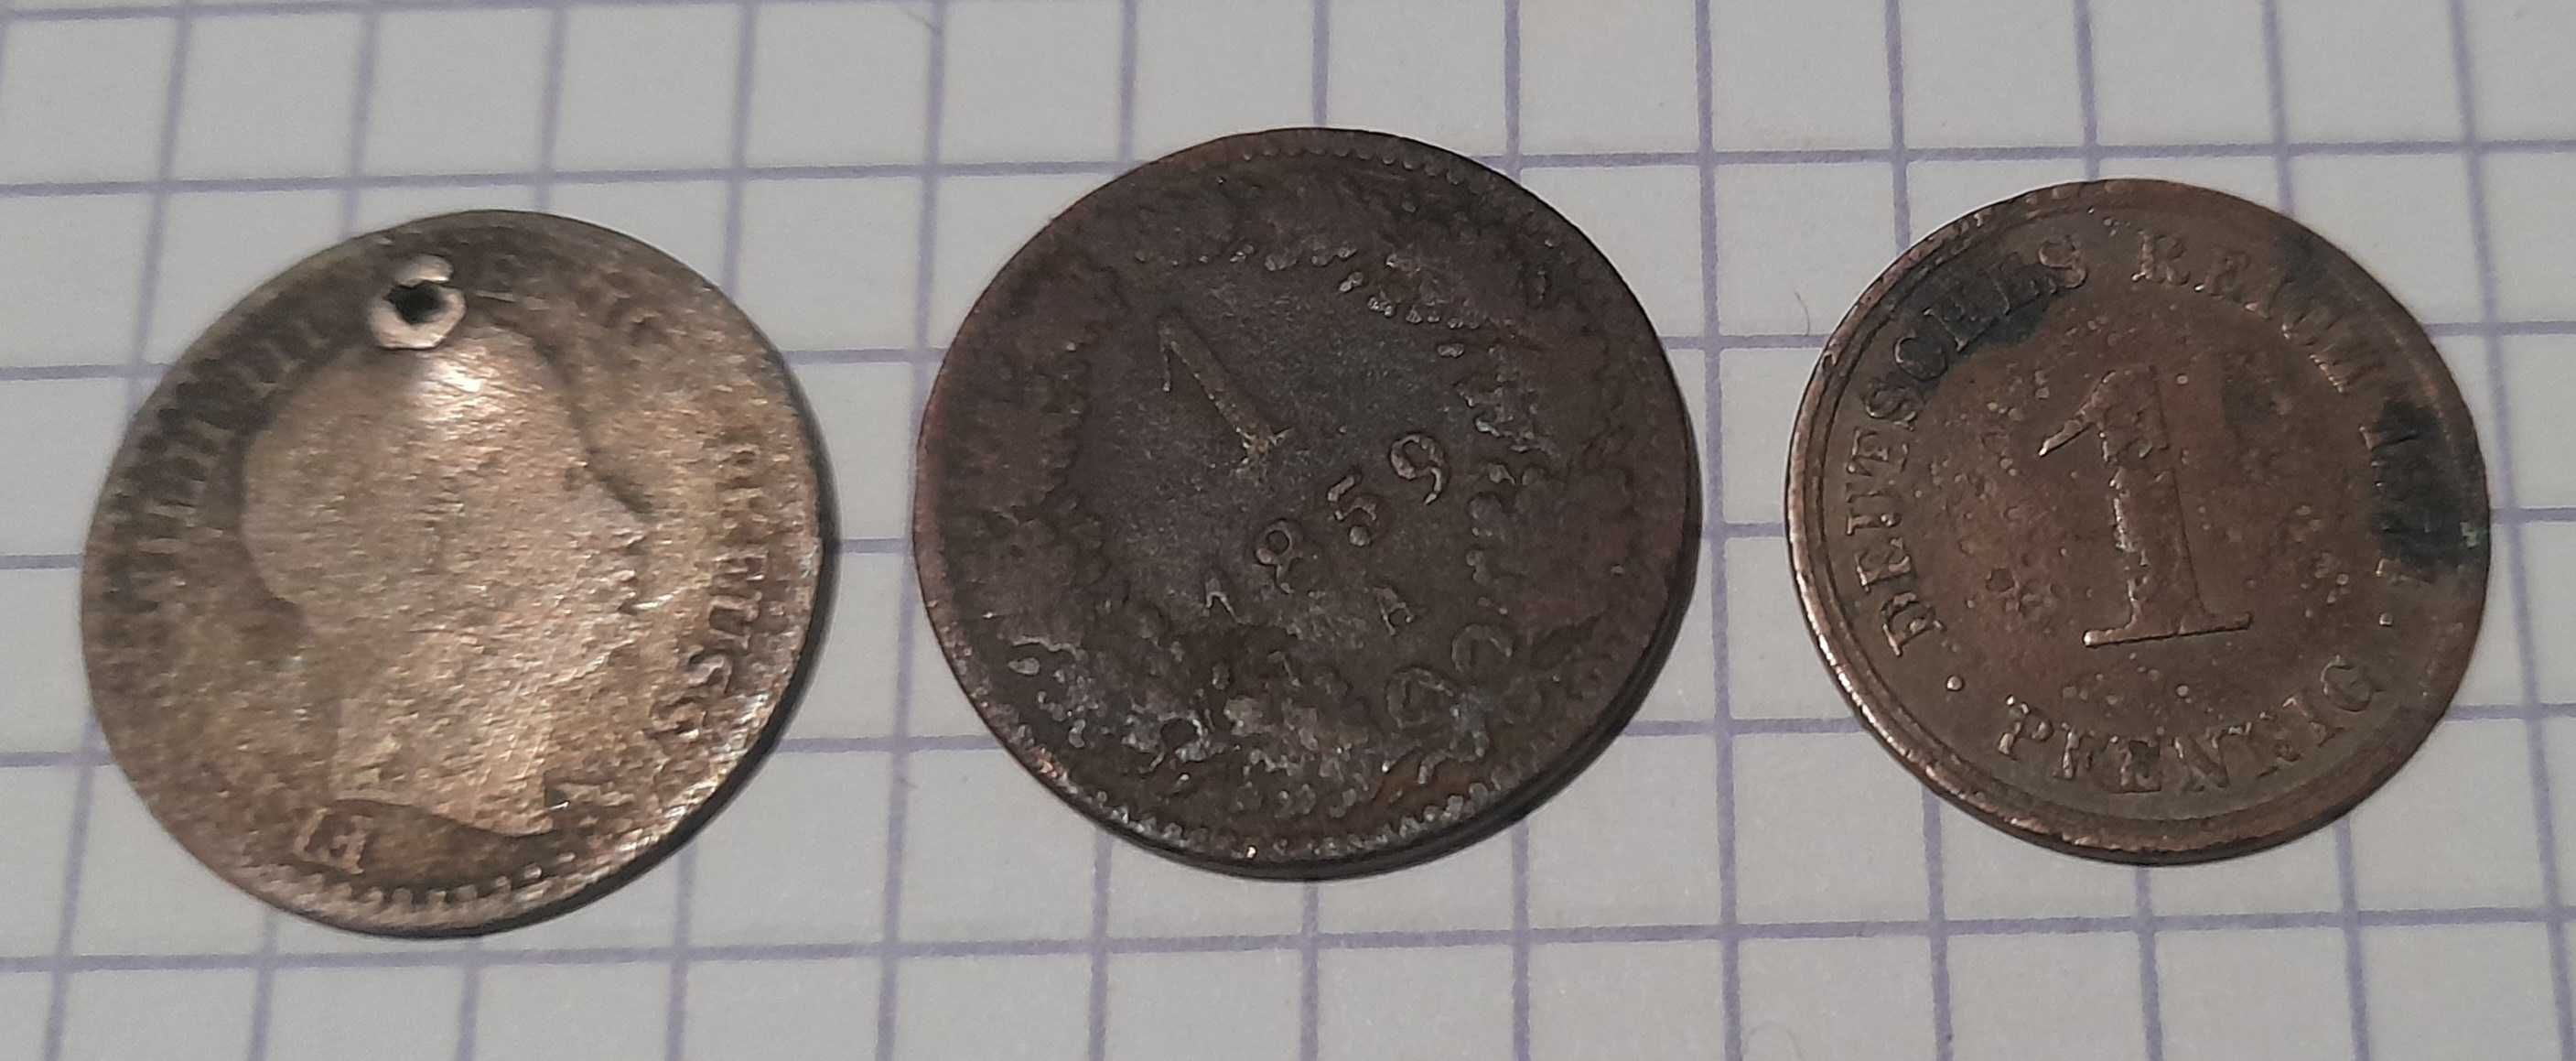 Stare monety przedwojenne niemieckie, pruskie